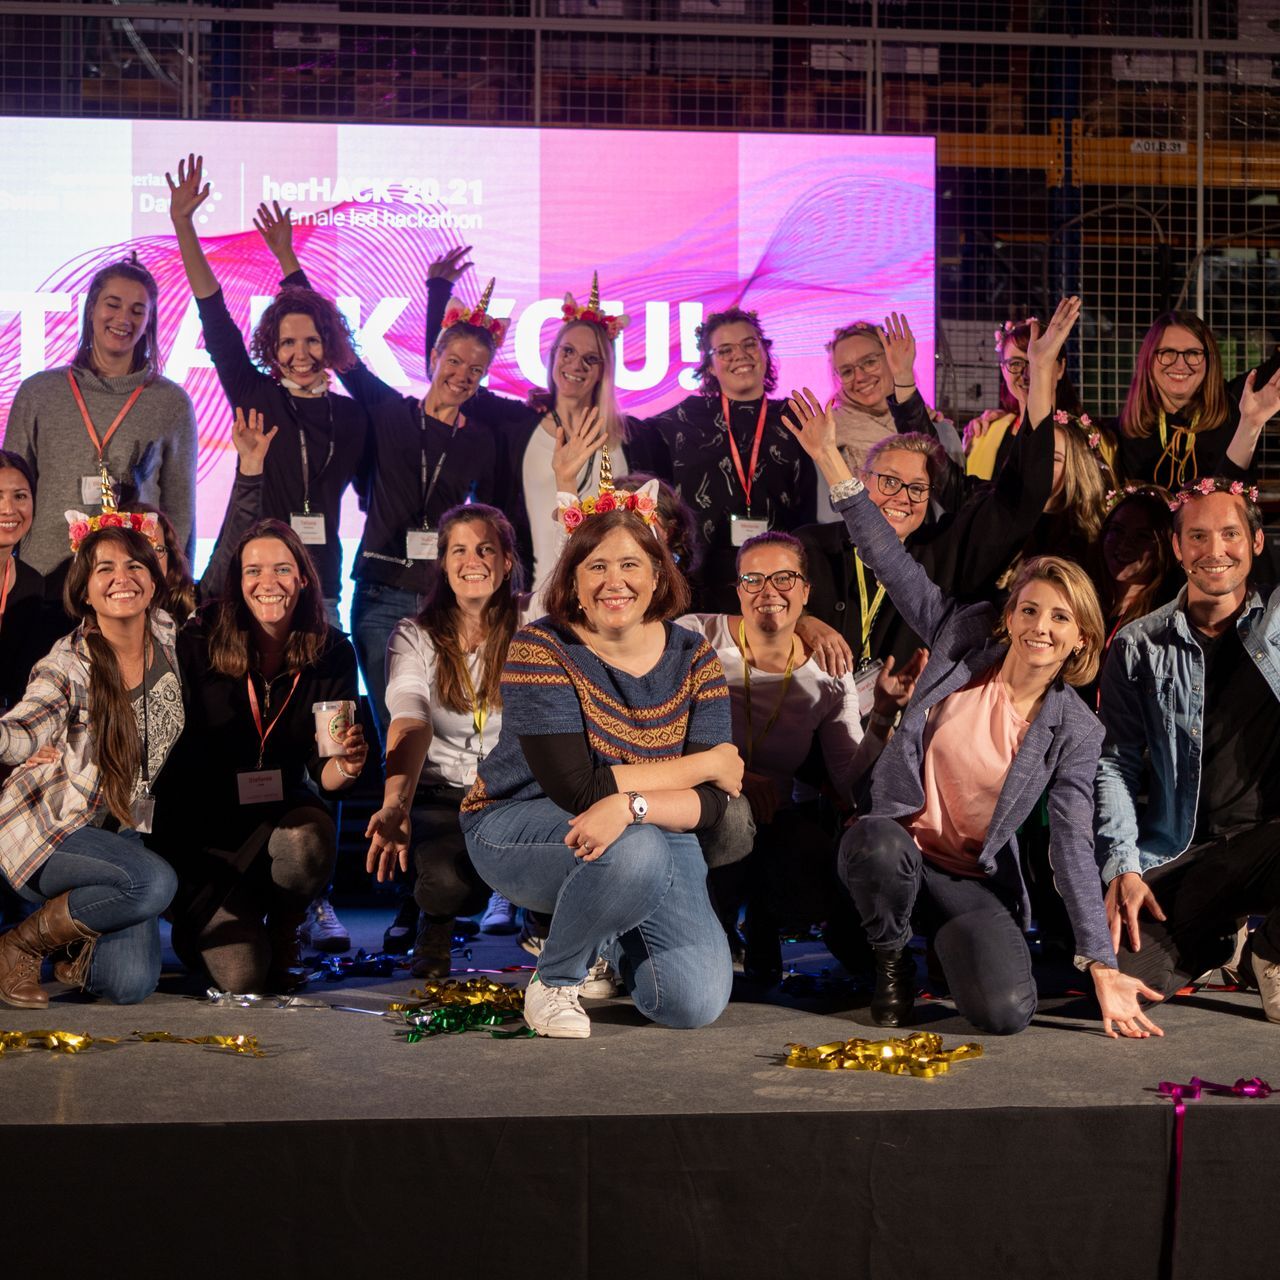 Sieviešu hakatonā "HerHack", kas tika organizēts 6. un 7. novembrī "Šveices digitālās dienas" ietvaros, uzvarēja Team Iconics, kuru veidoja Melānija Menge, Fiona Hedigere, Jamina Zīgrista, Marija Klieša un Elizabete Makkenzija (Foto: Morics Šmids)